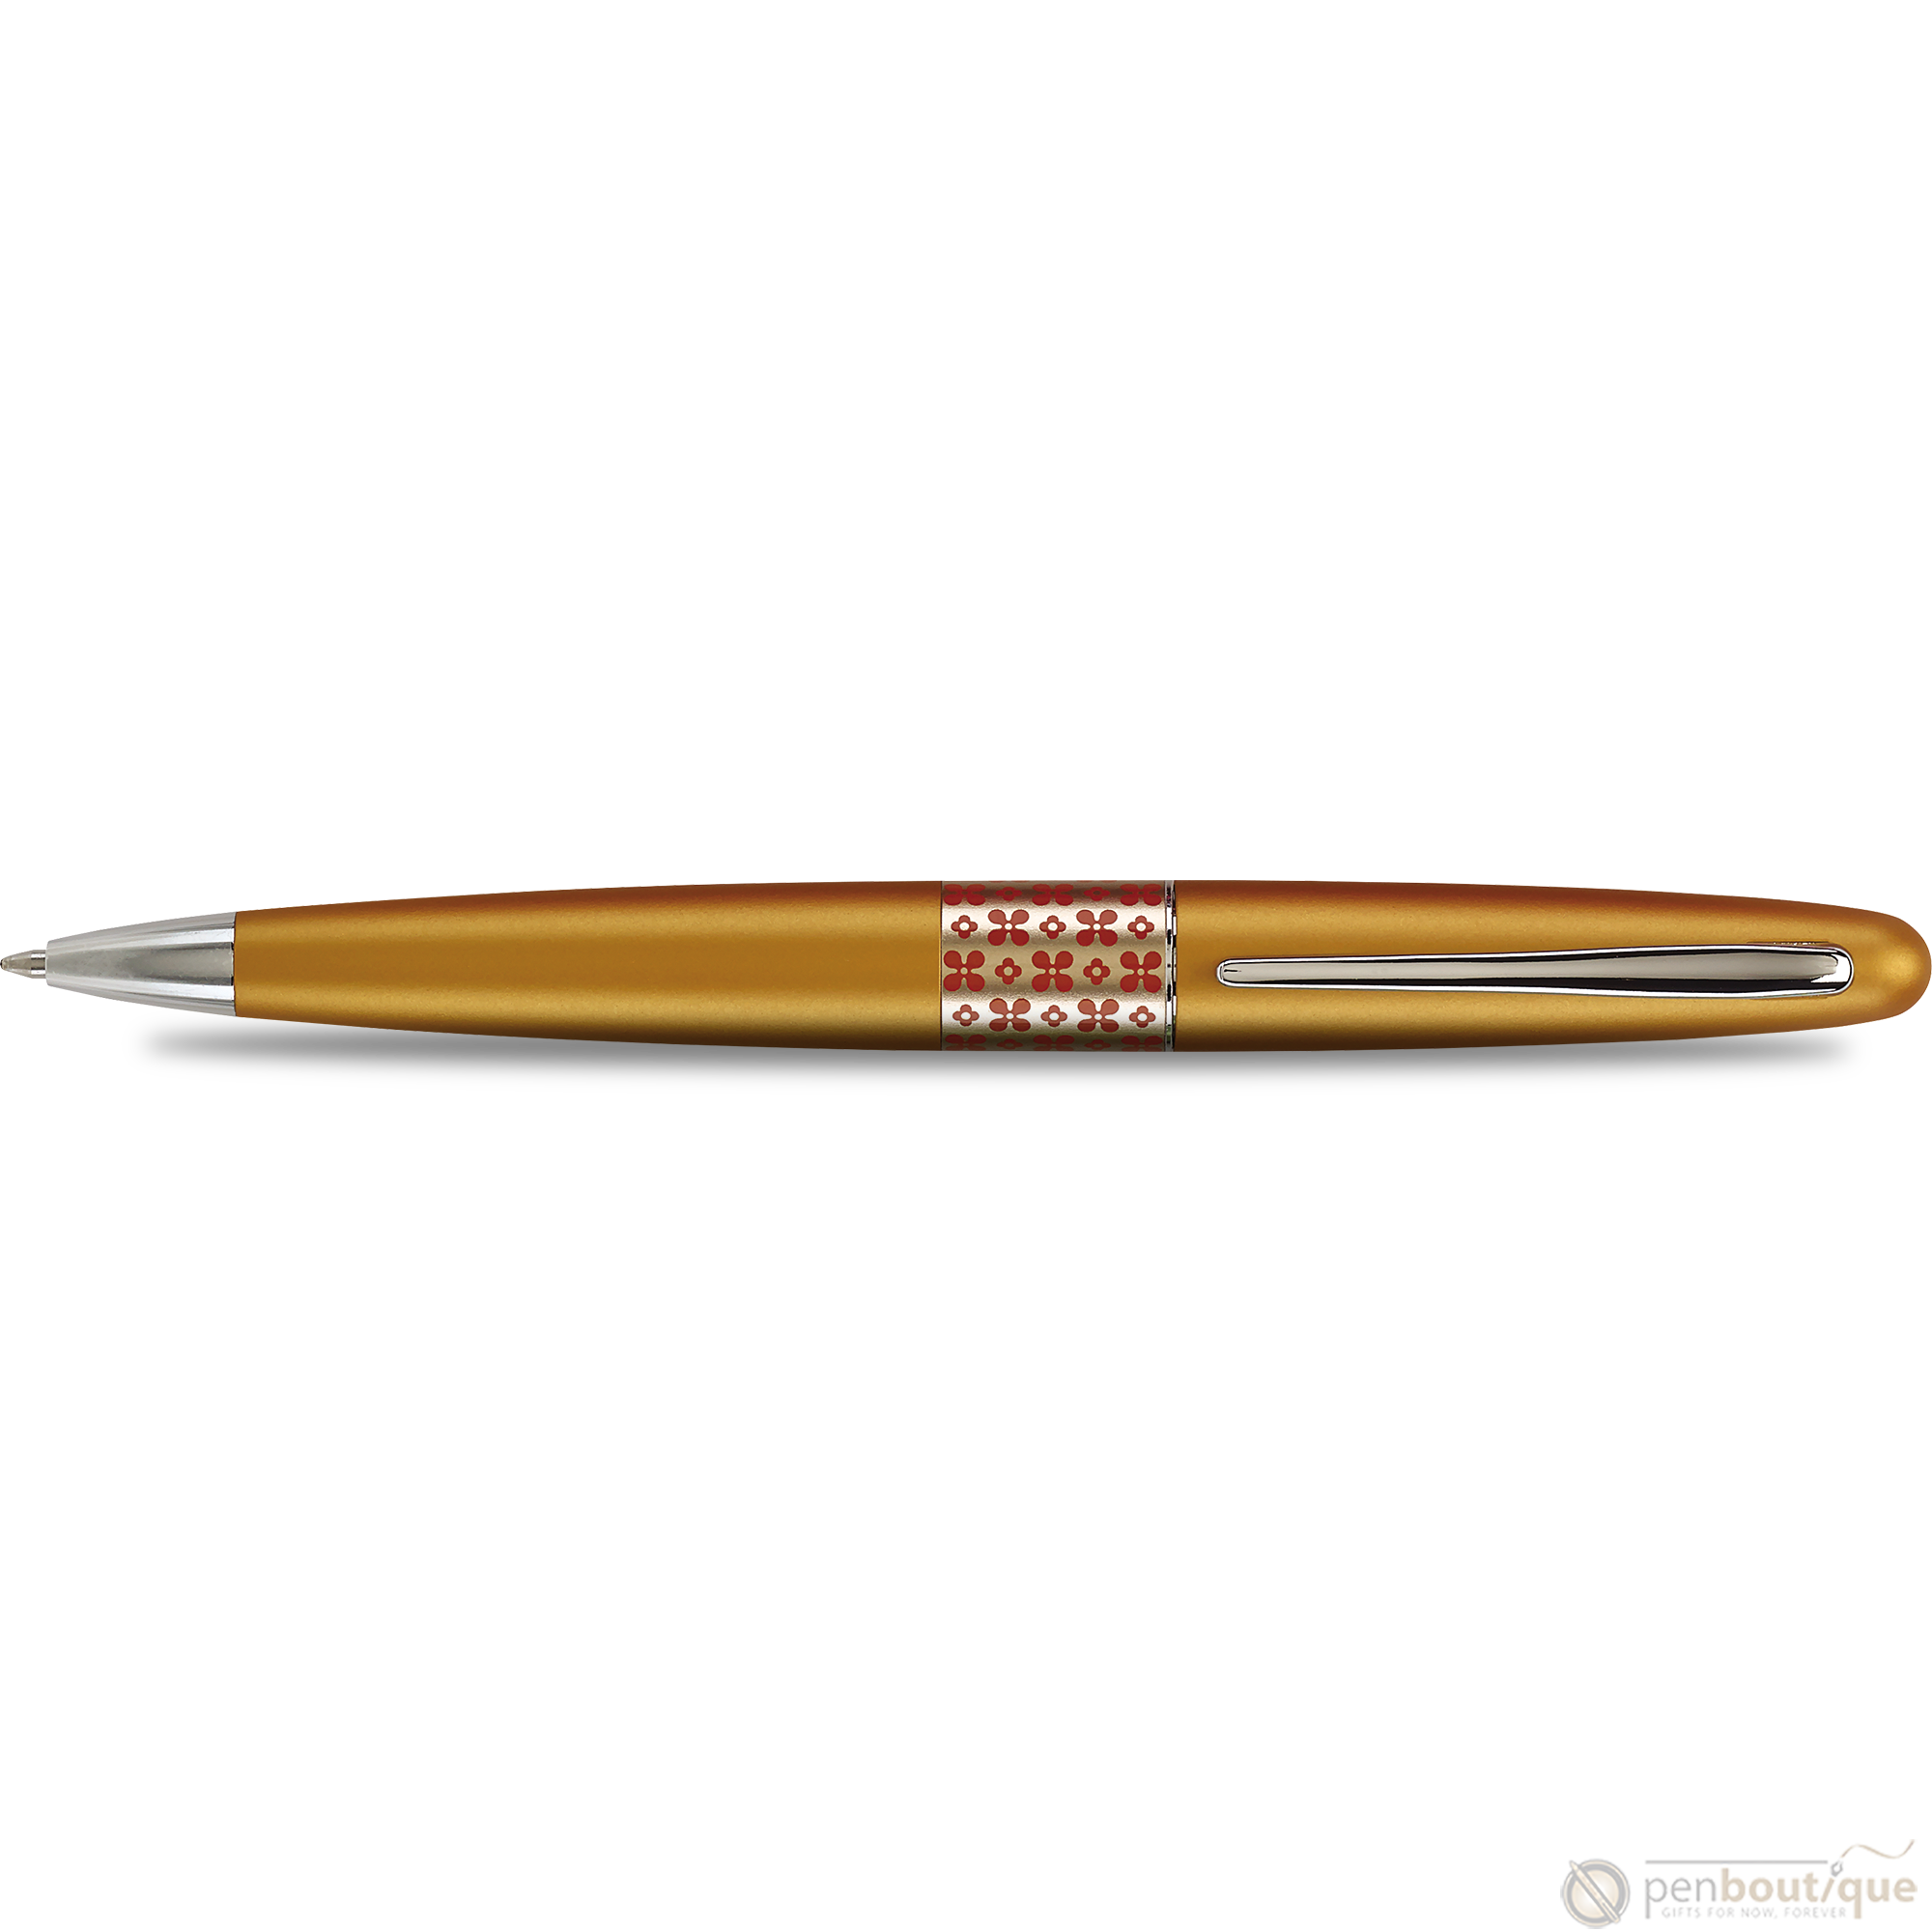 Pilot Ballpoint Pen - MR Collection - Retro Pop - Orange-Pen Boutique Ltd